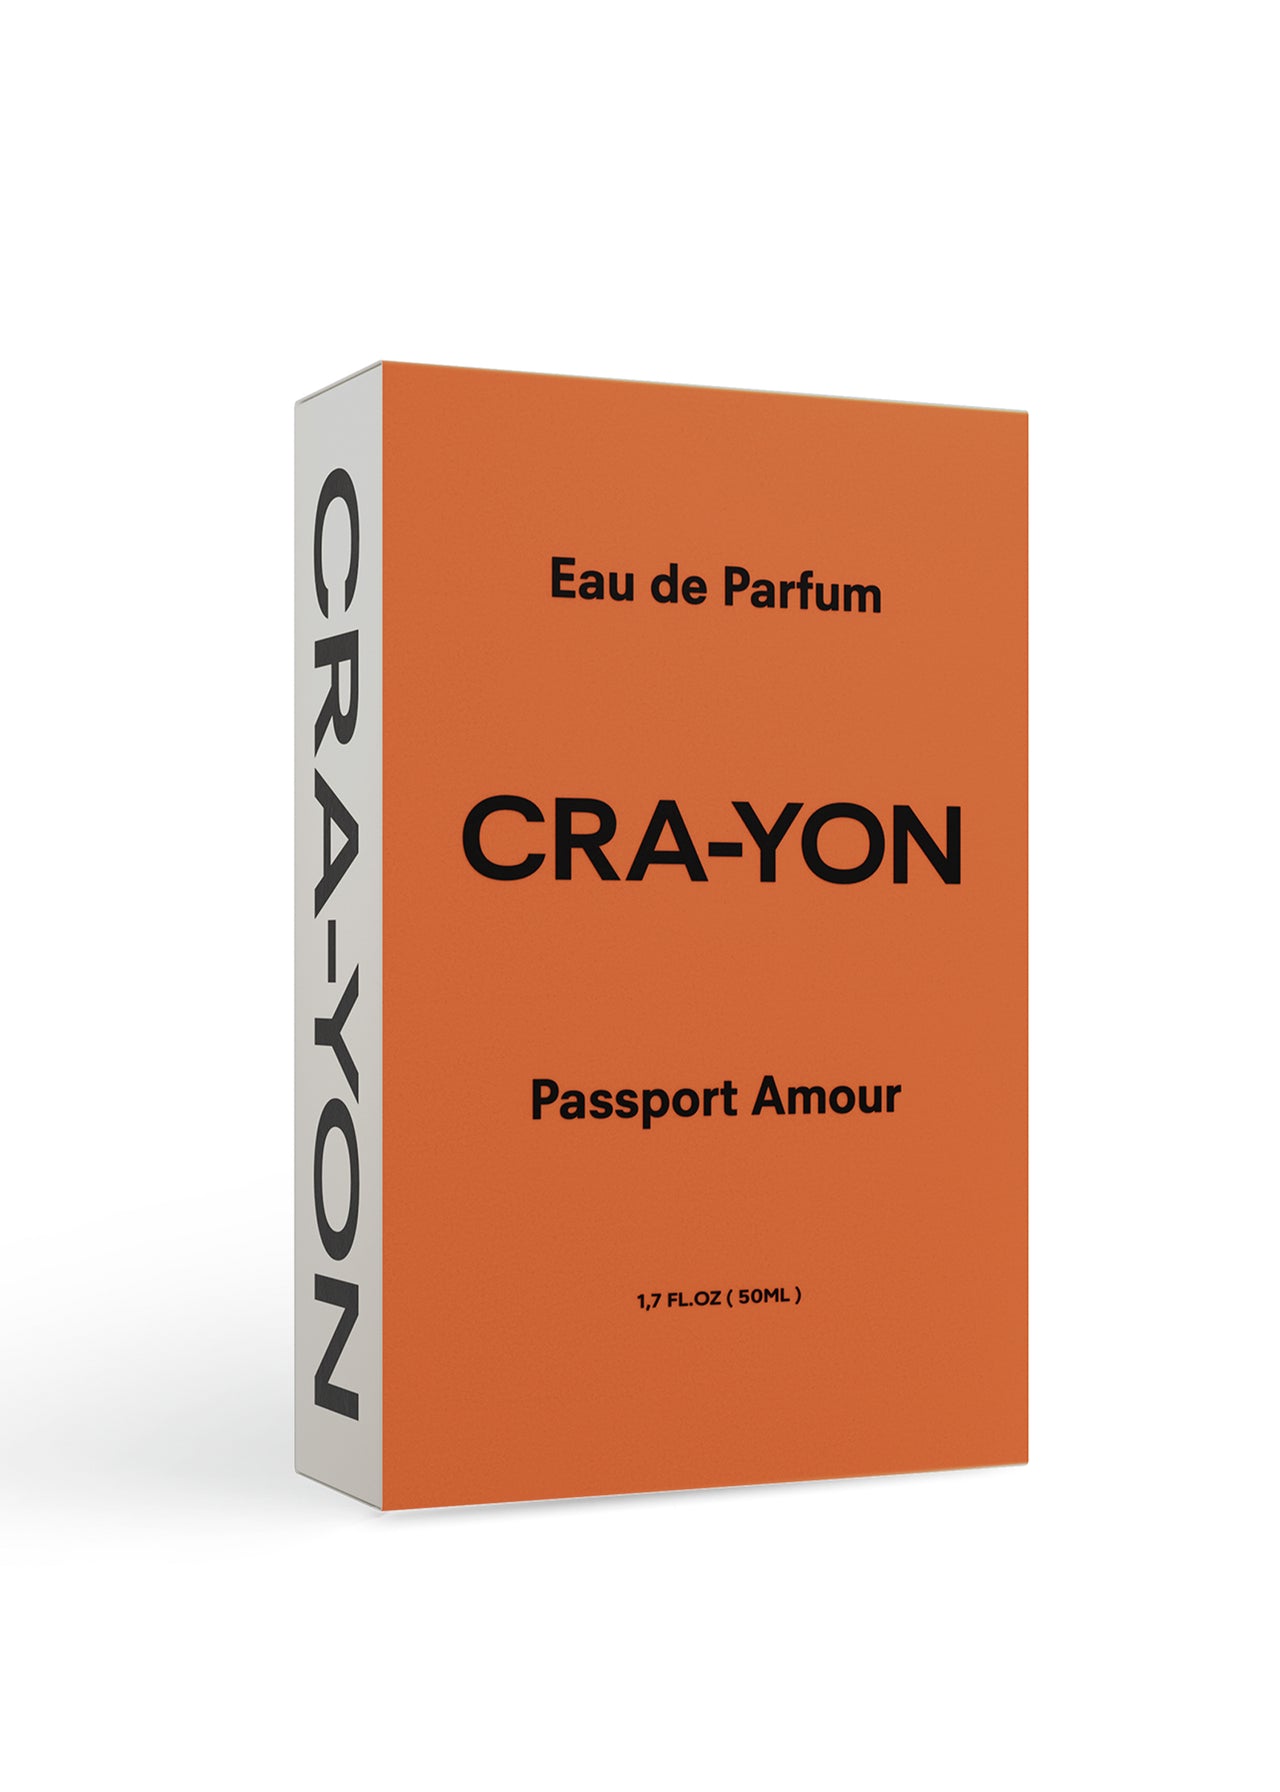 CRA-YON Passport Amour Eau de Parfum